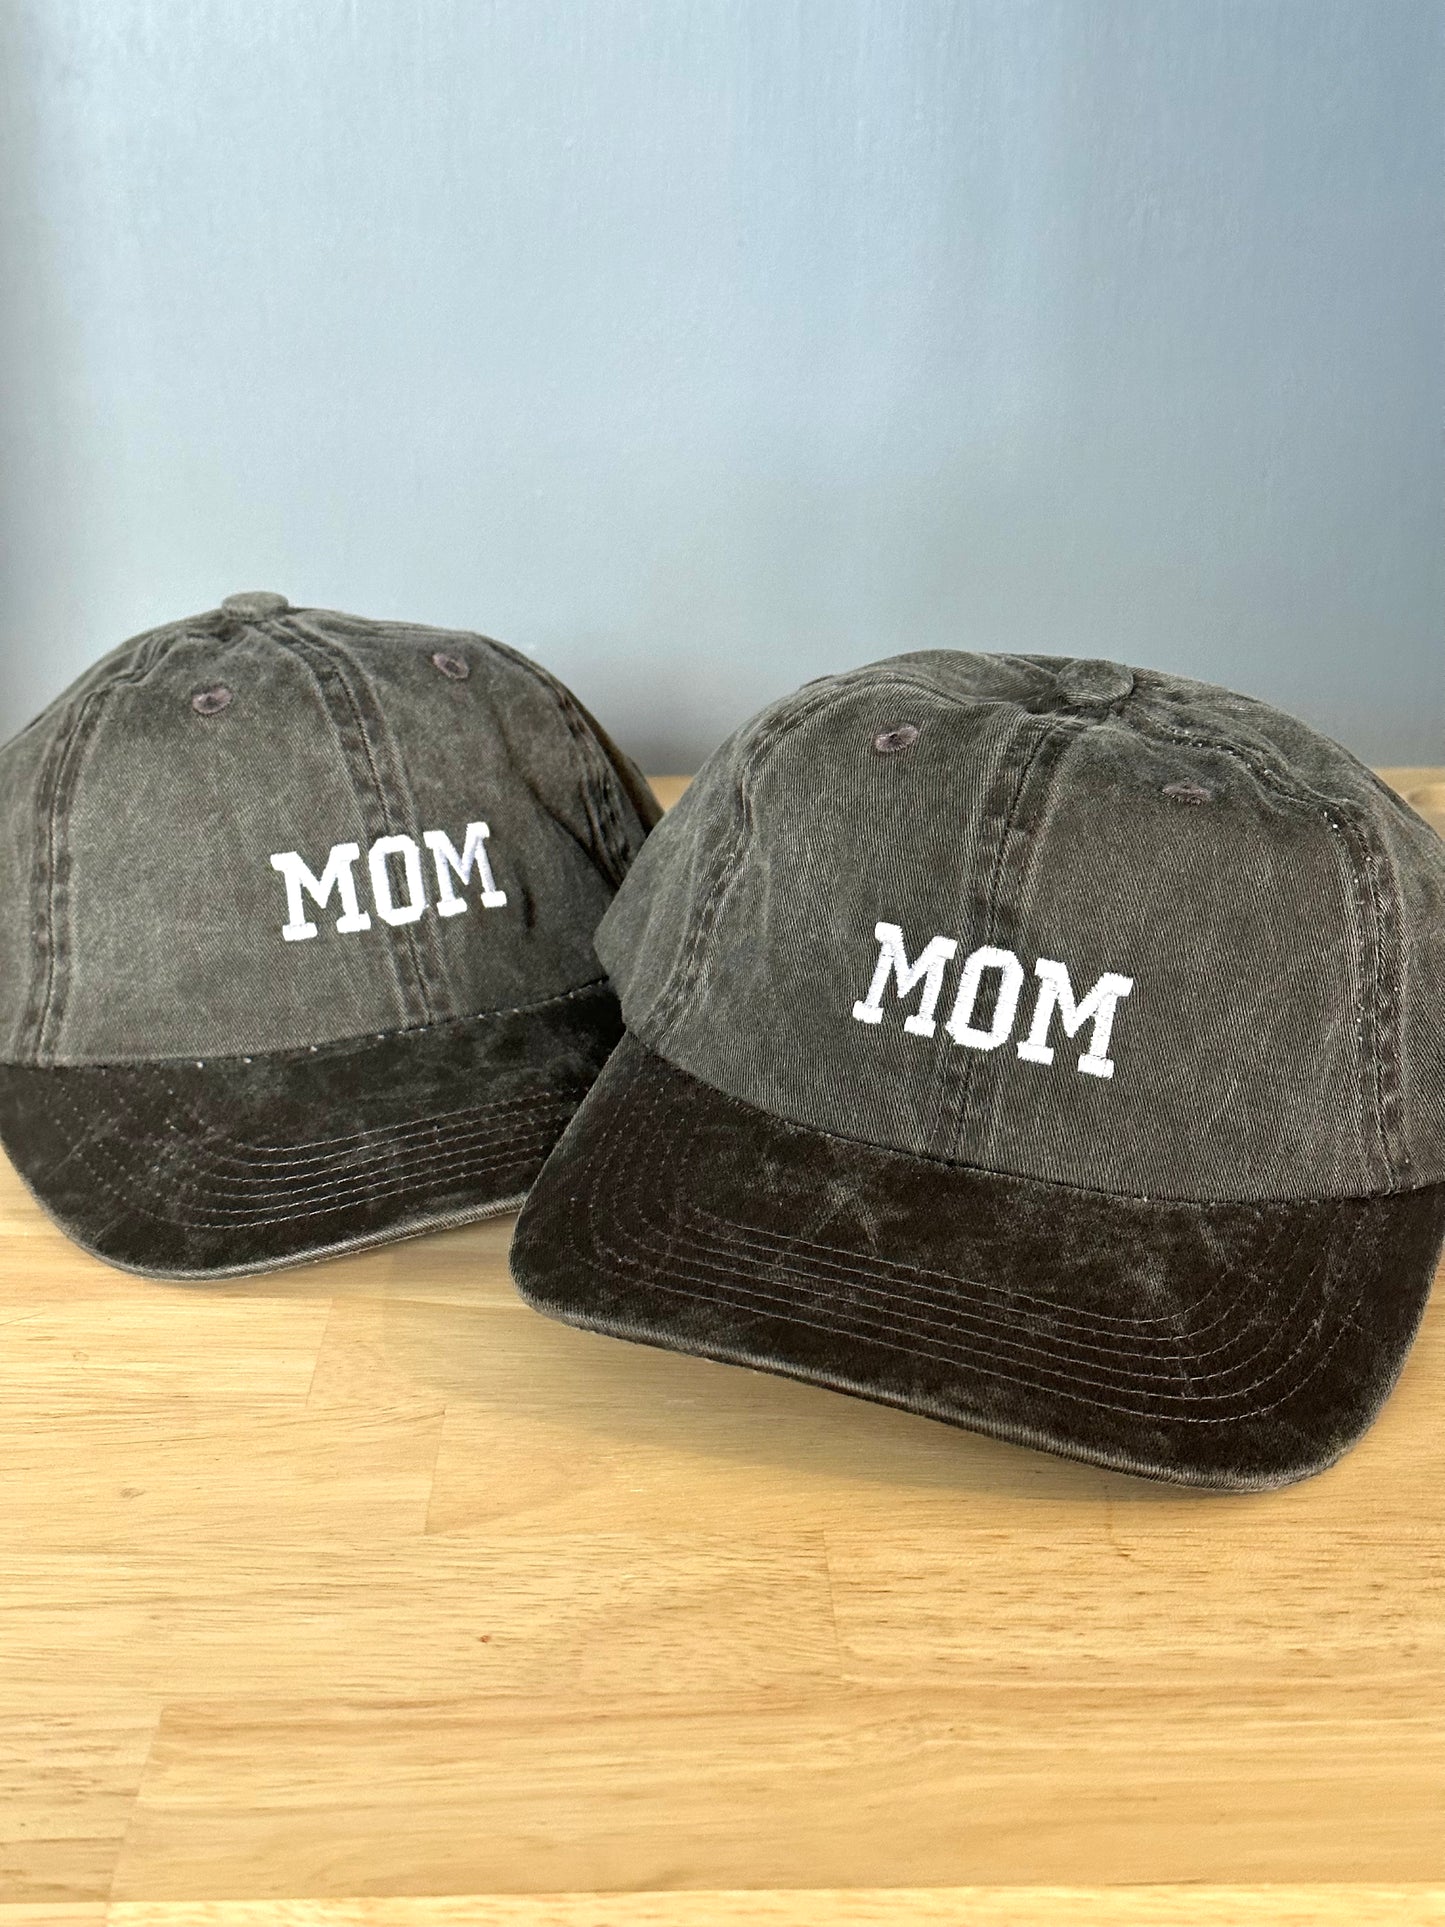 MOM & DAD Unstructured Hat Set